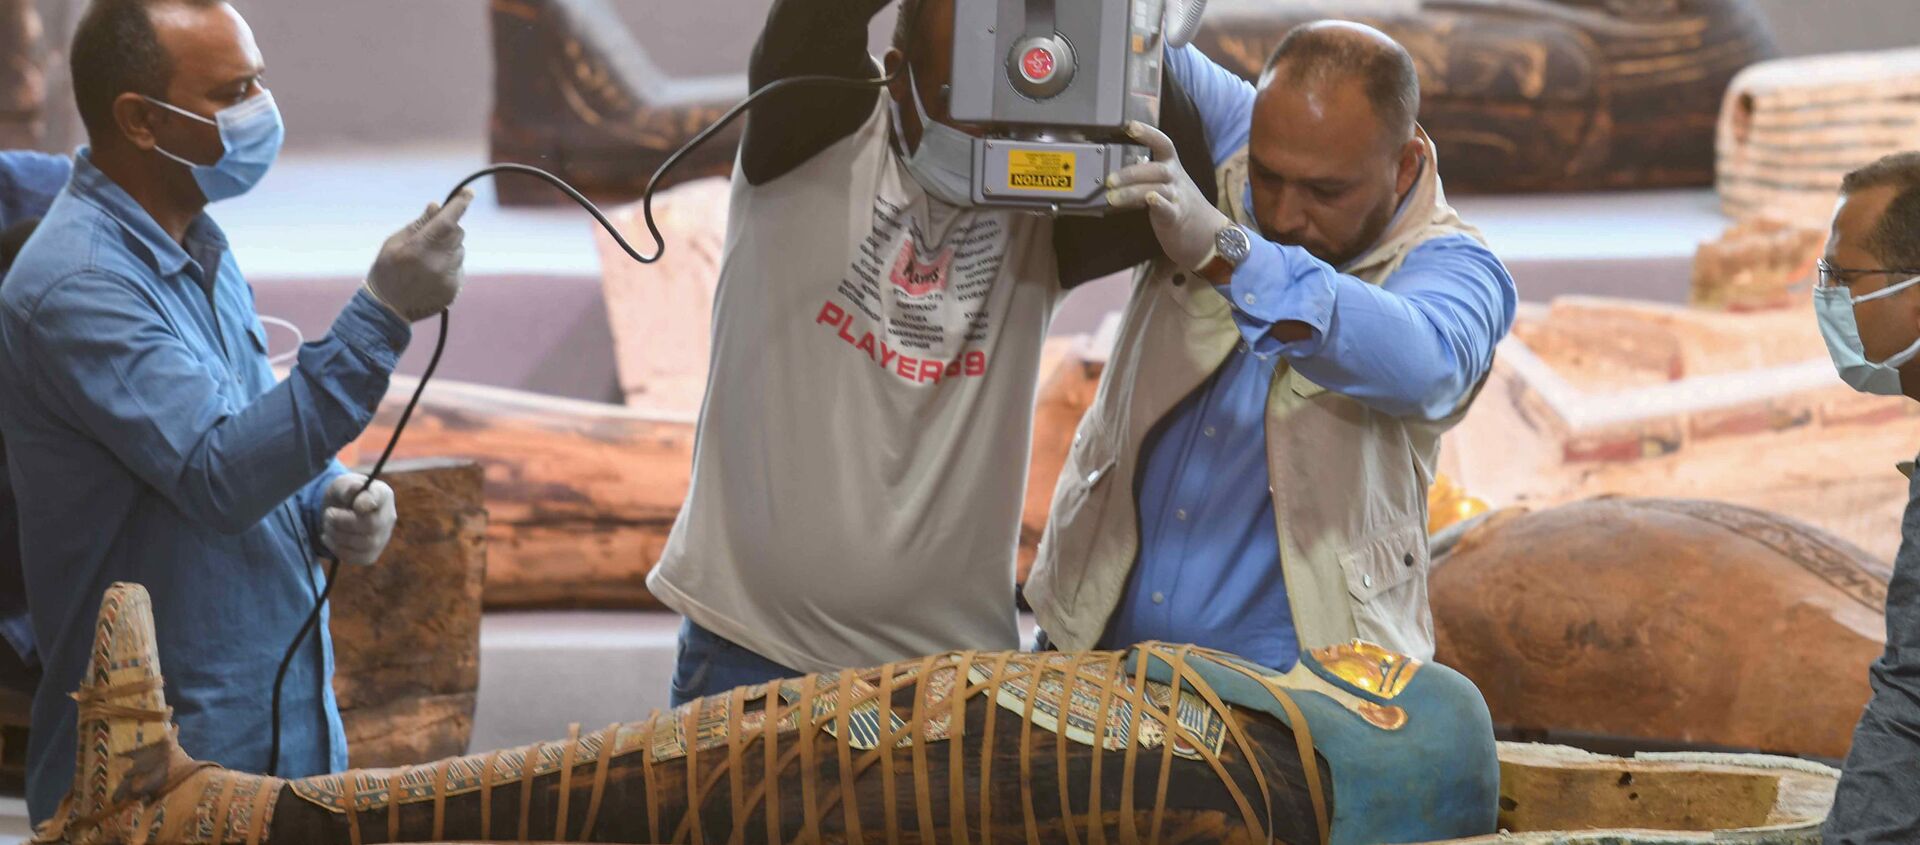 Mısır'ın  en eski antik başkenti Memphis'in Sakkara nekropolünde bulunan 2500 yıldan daha eski 100'den fazla lahitten çıkan mumyayı röntgen cihazıyla inceleyen arkeologlar - Sputnik Türkiye, 1920, 15.11.2020